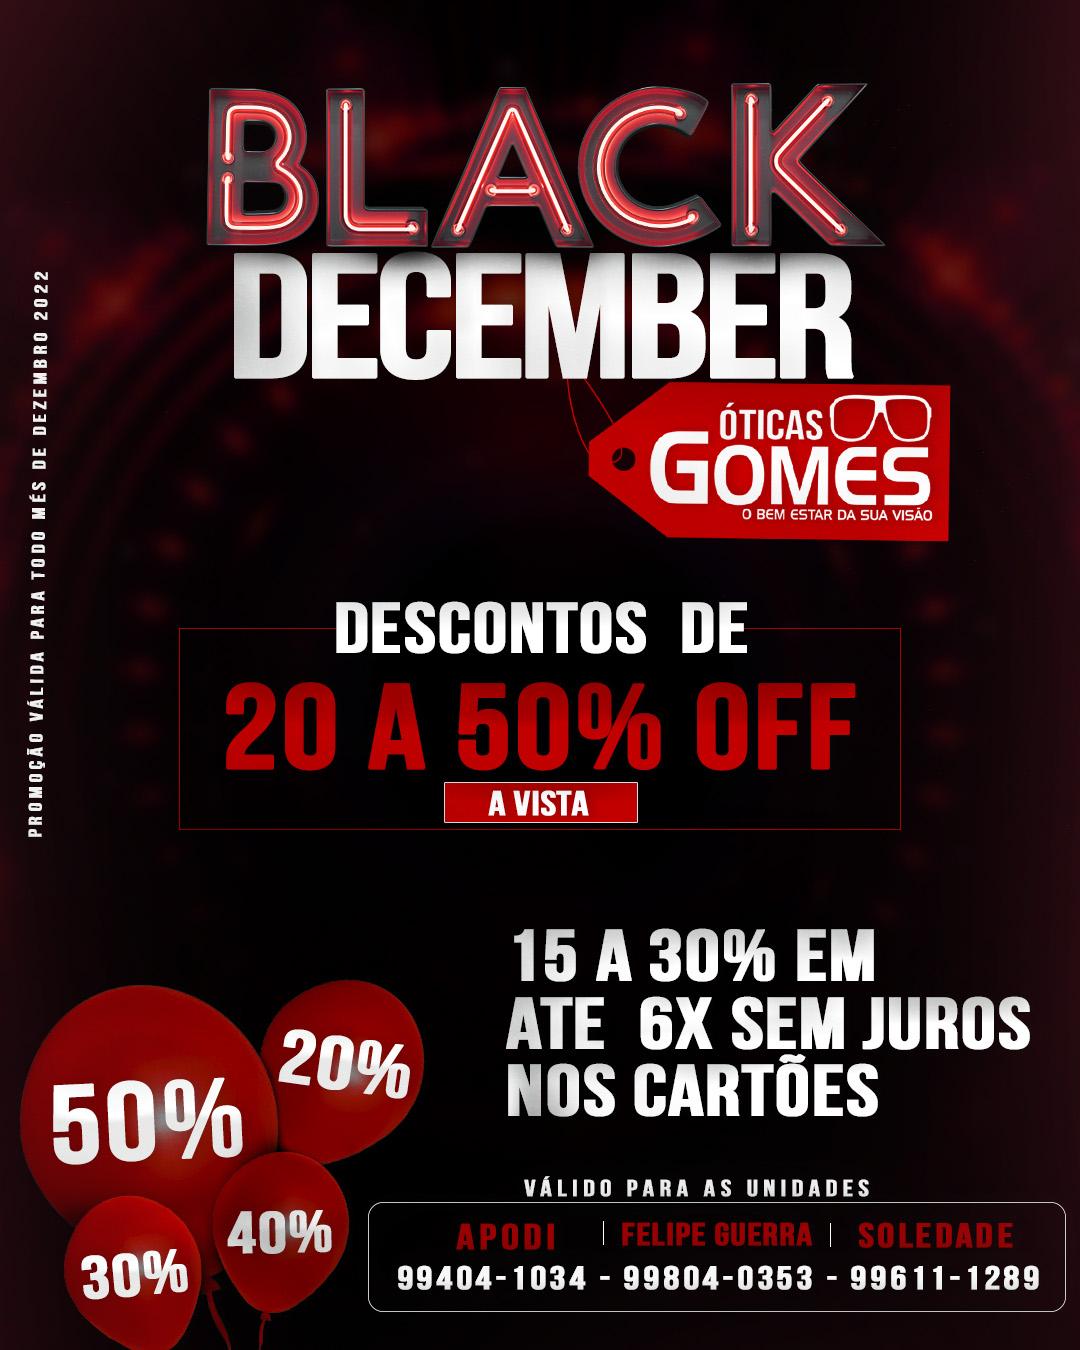 Óticas Gomes lança mega promoção de Black December com descontos de até 50%  a vista - Gazeta do RN